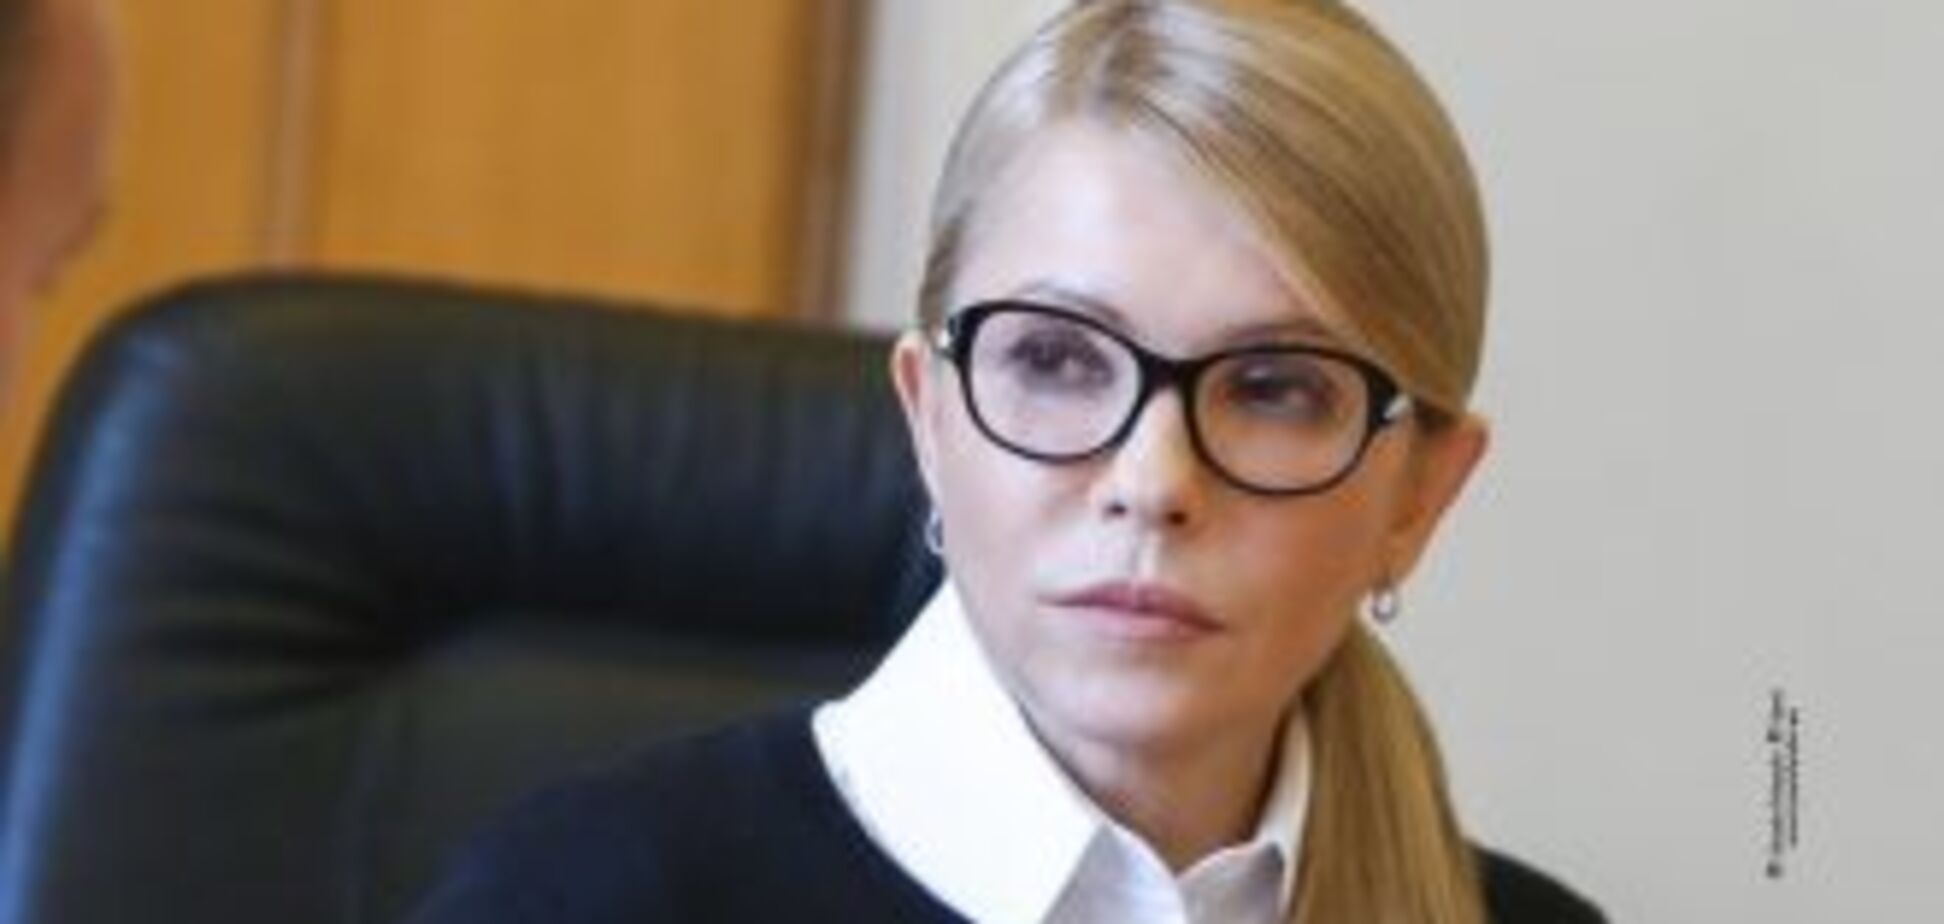 Нова влада встановить мир і наведе лад в Україні – Тимошенко